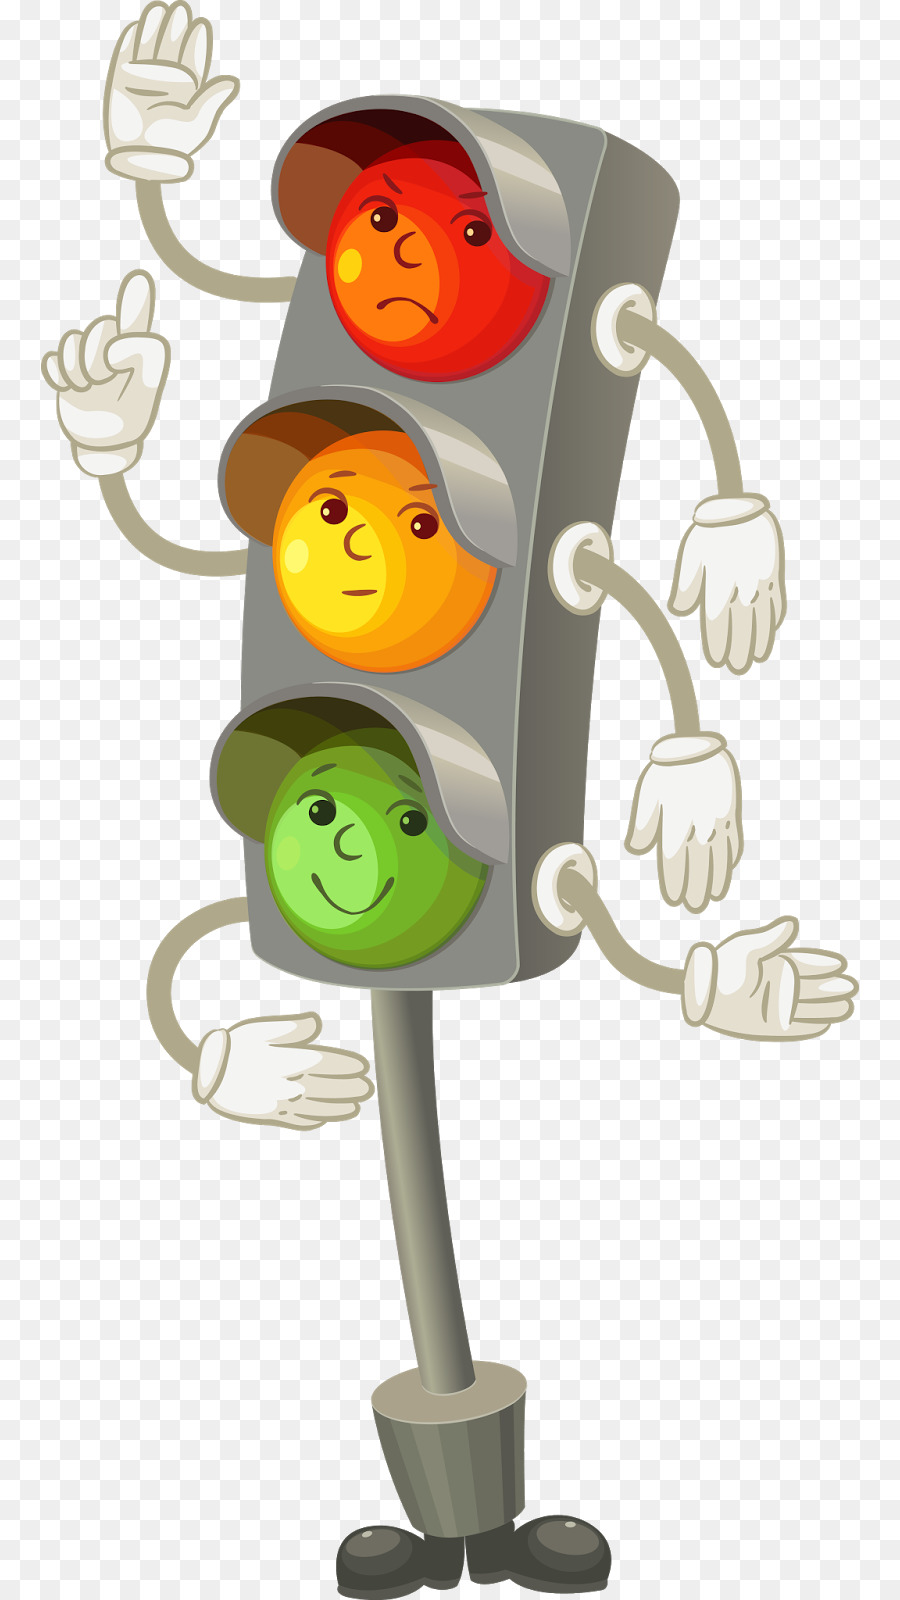 Traffic Light Cartoon